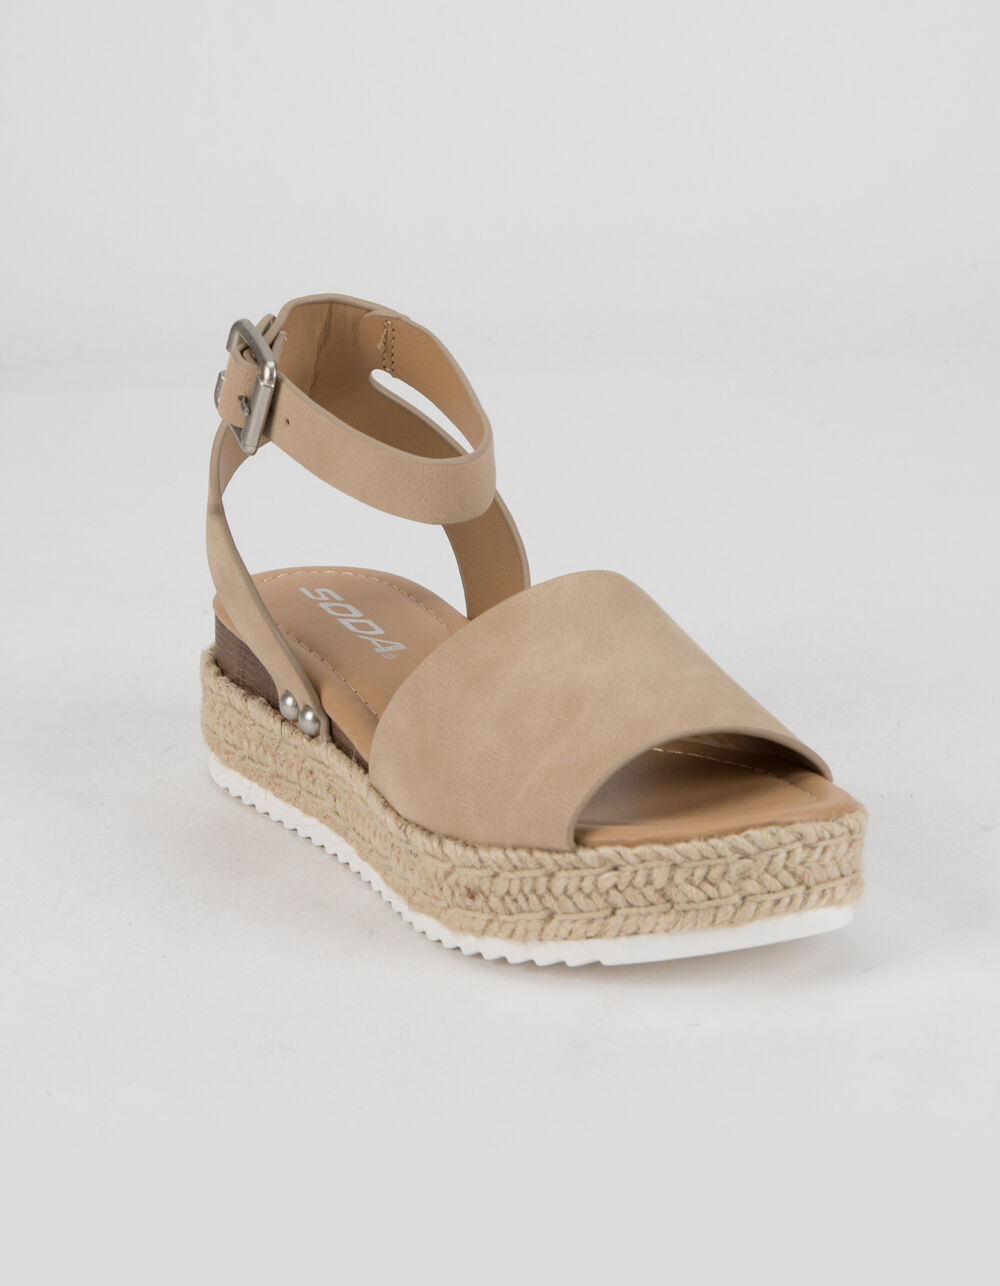 SODA Ankle Strap Girls Taupe Espadrille Flatform Sandals - TAUPE | Tillys